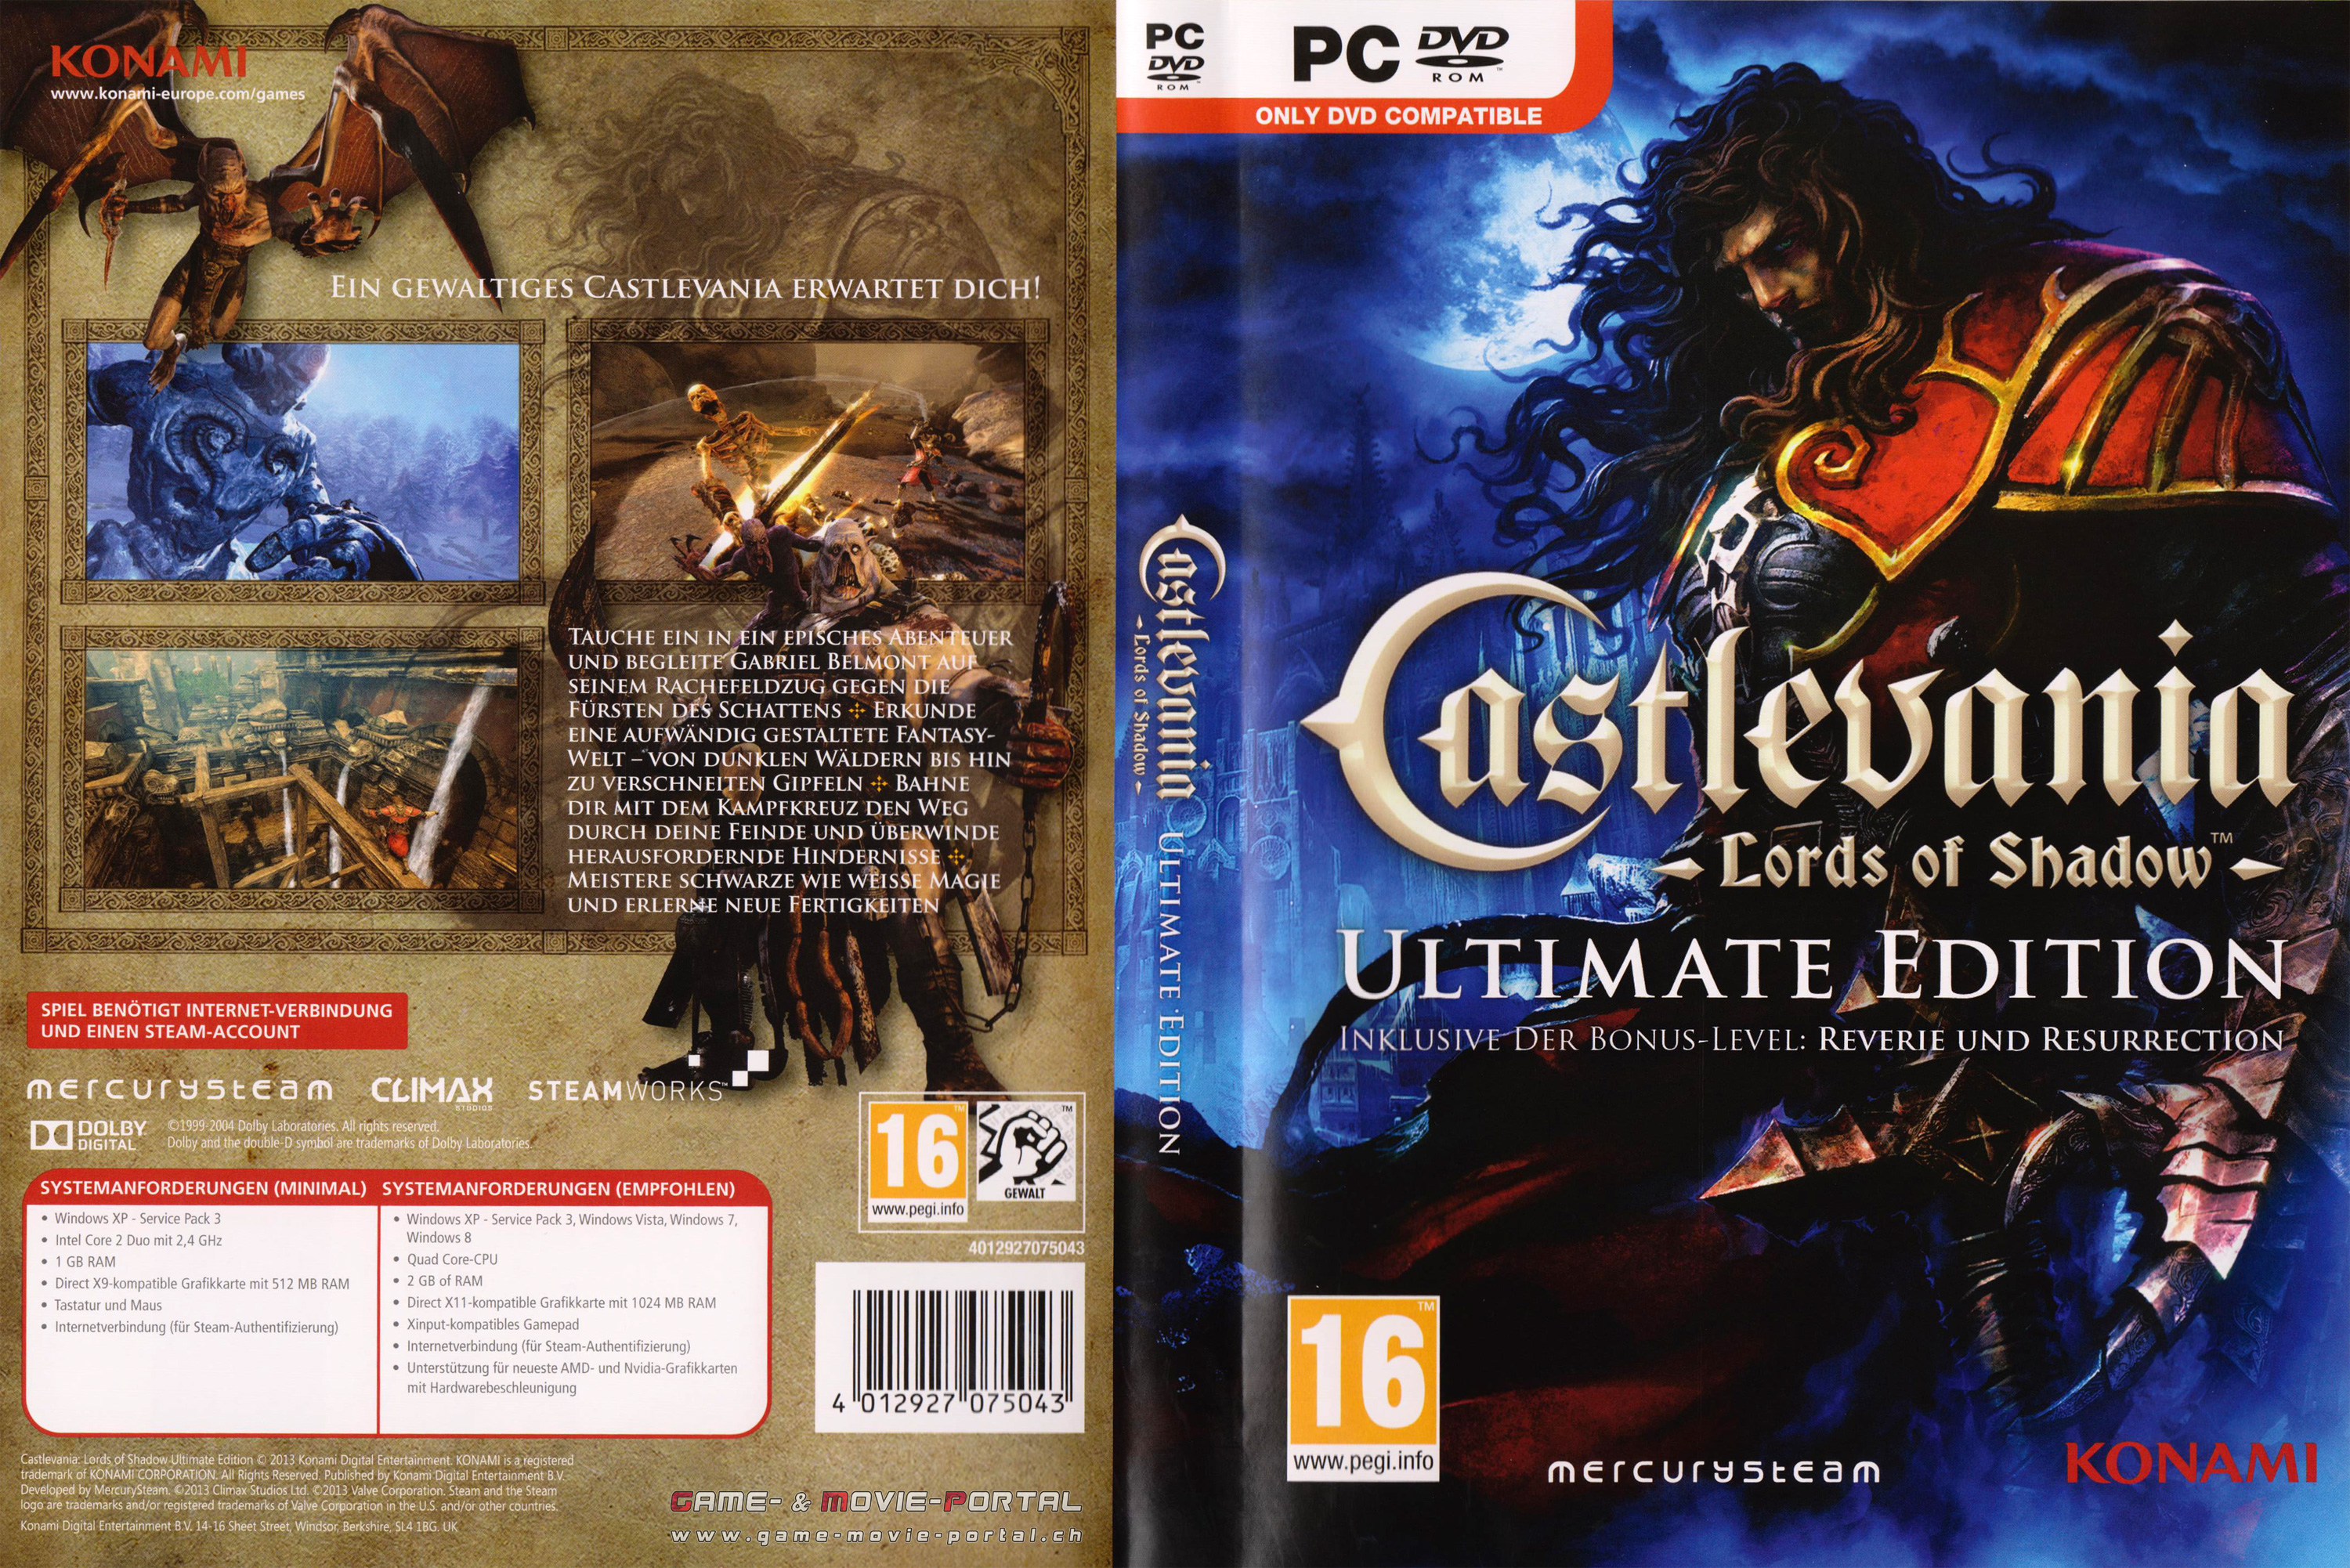 Обложка shadow. Castlevania los 2 Xbox 360. Castlevania Xbox 360 обложка. Castlevania 2 обложка. Castlevania ps3 диск.